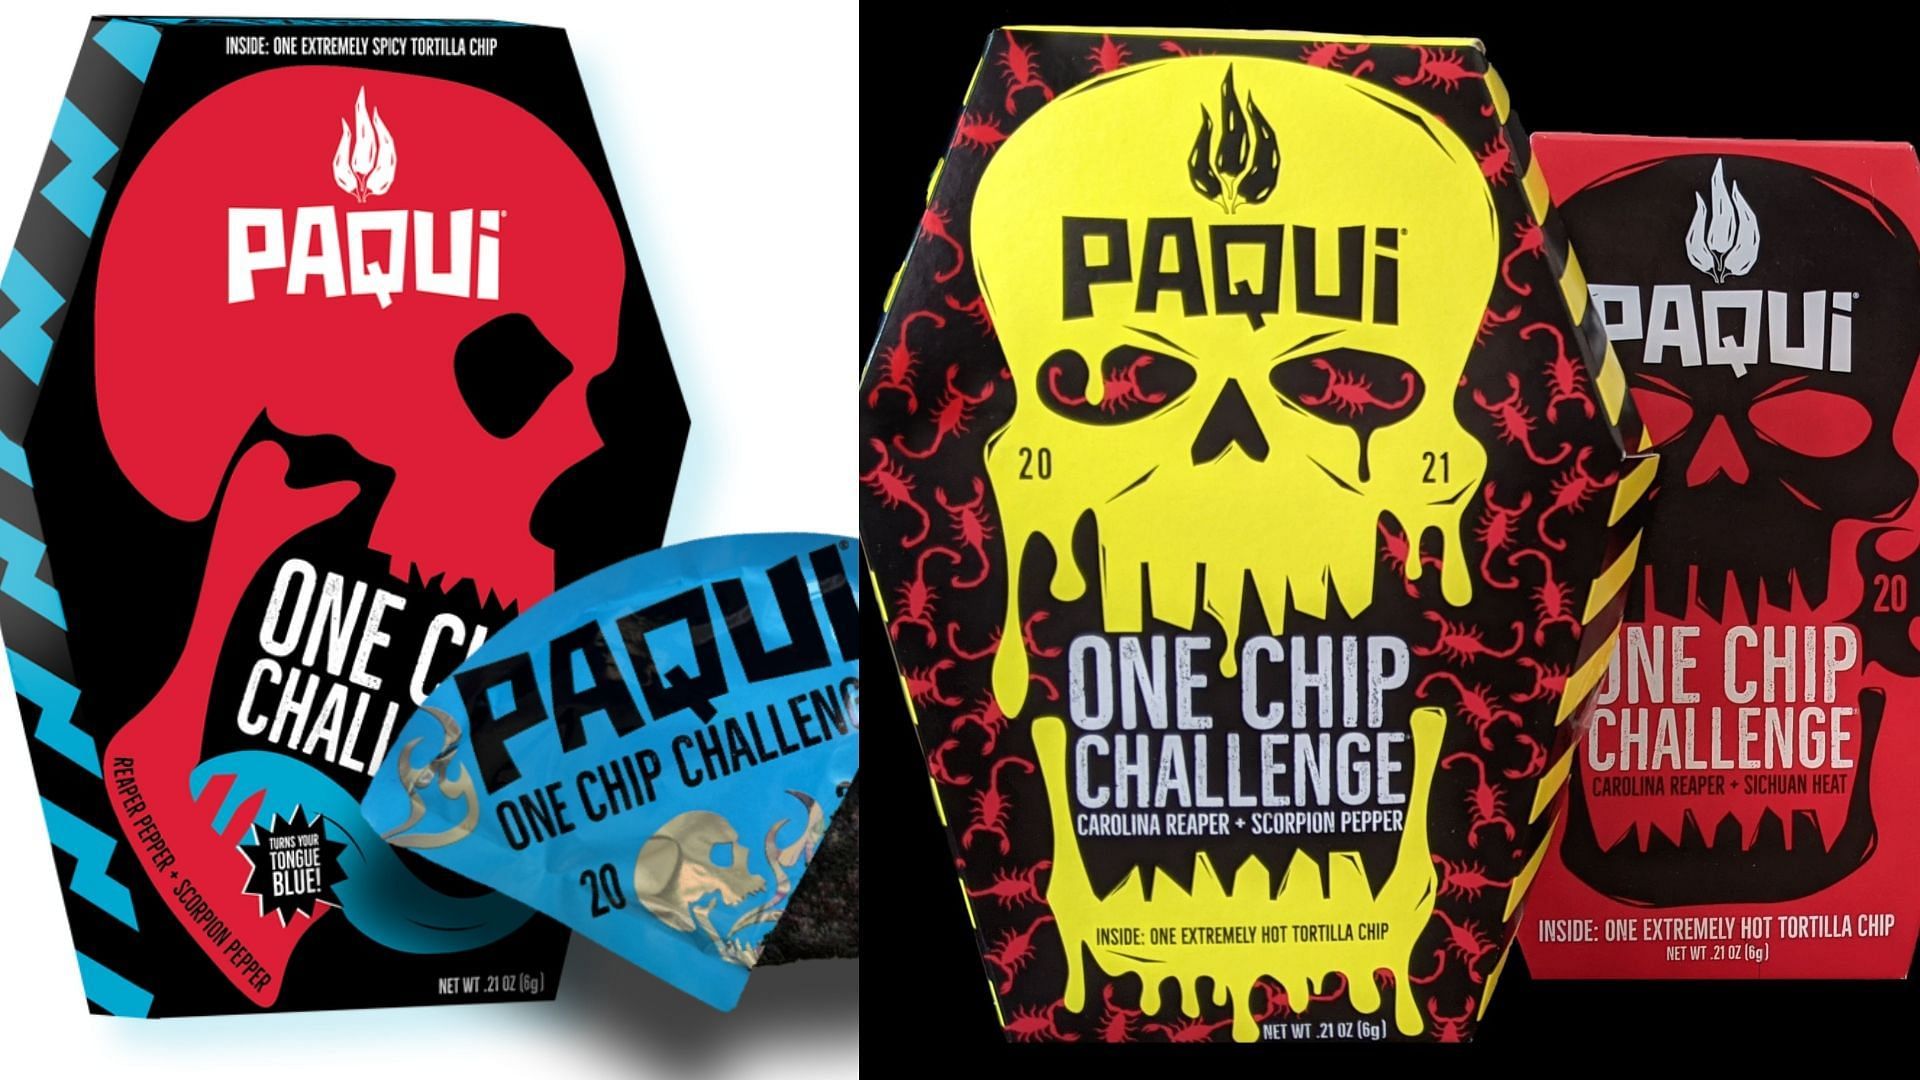 One Chip Challenge takes over social media (via paqui.com)